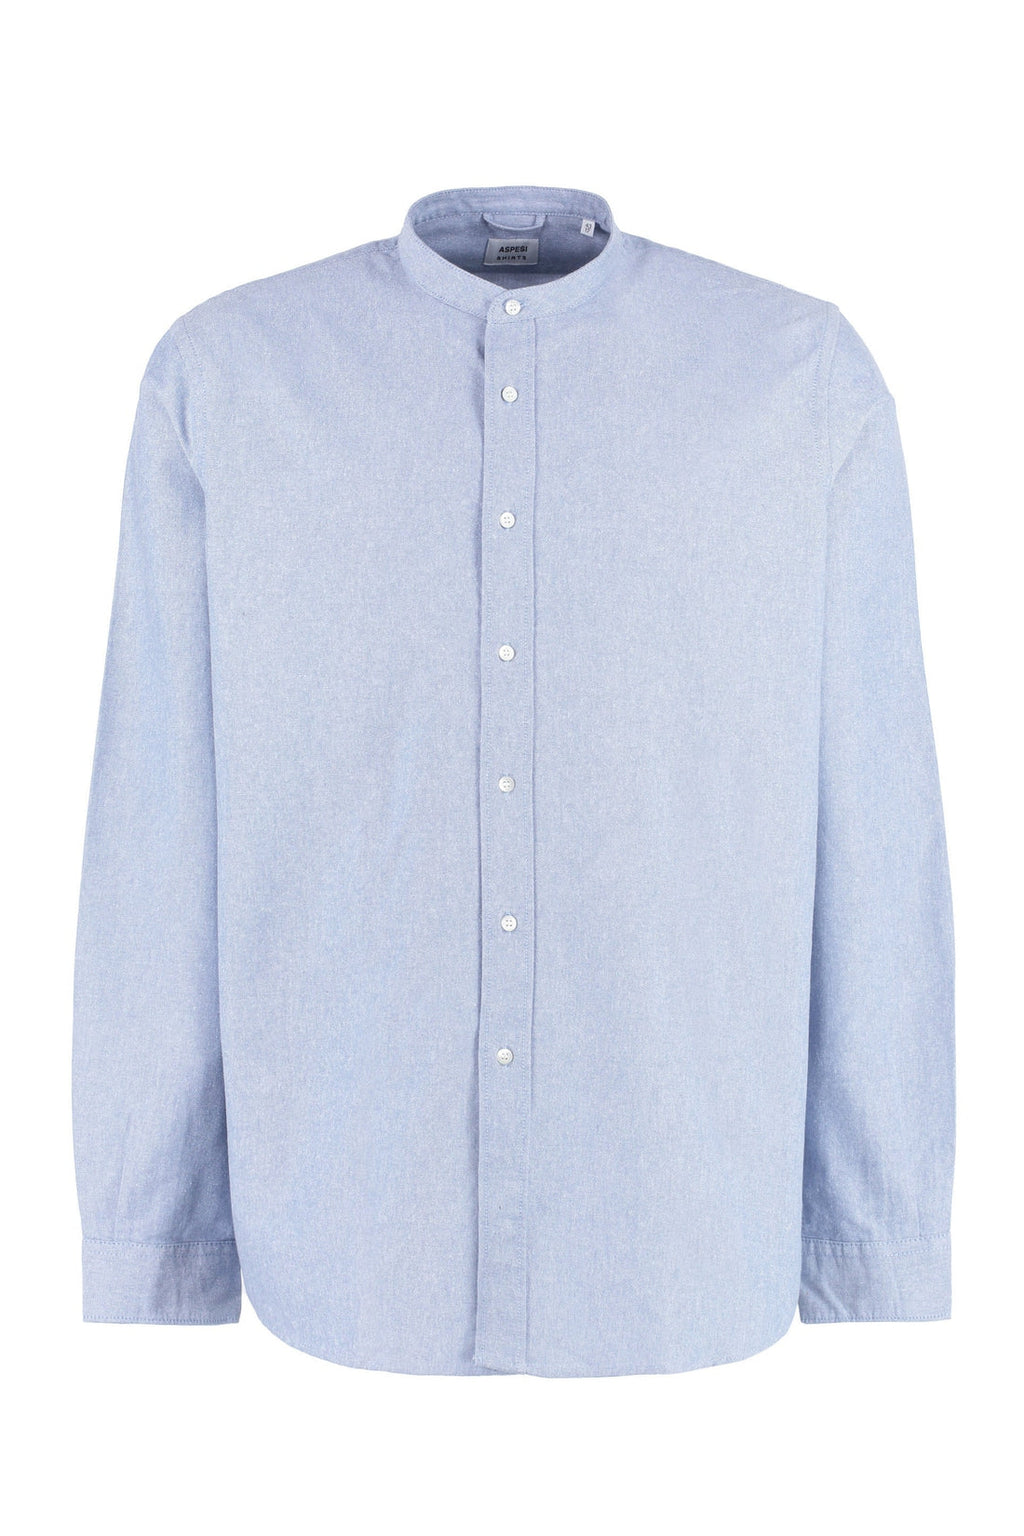 Aspesi-OUTLET-SALE-Long sleeve cotton shirt-ARCHIVIST